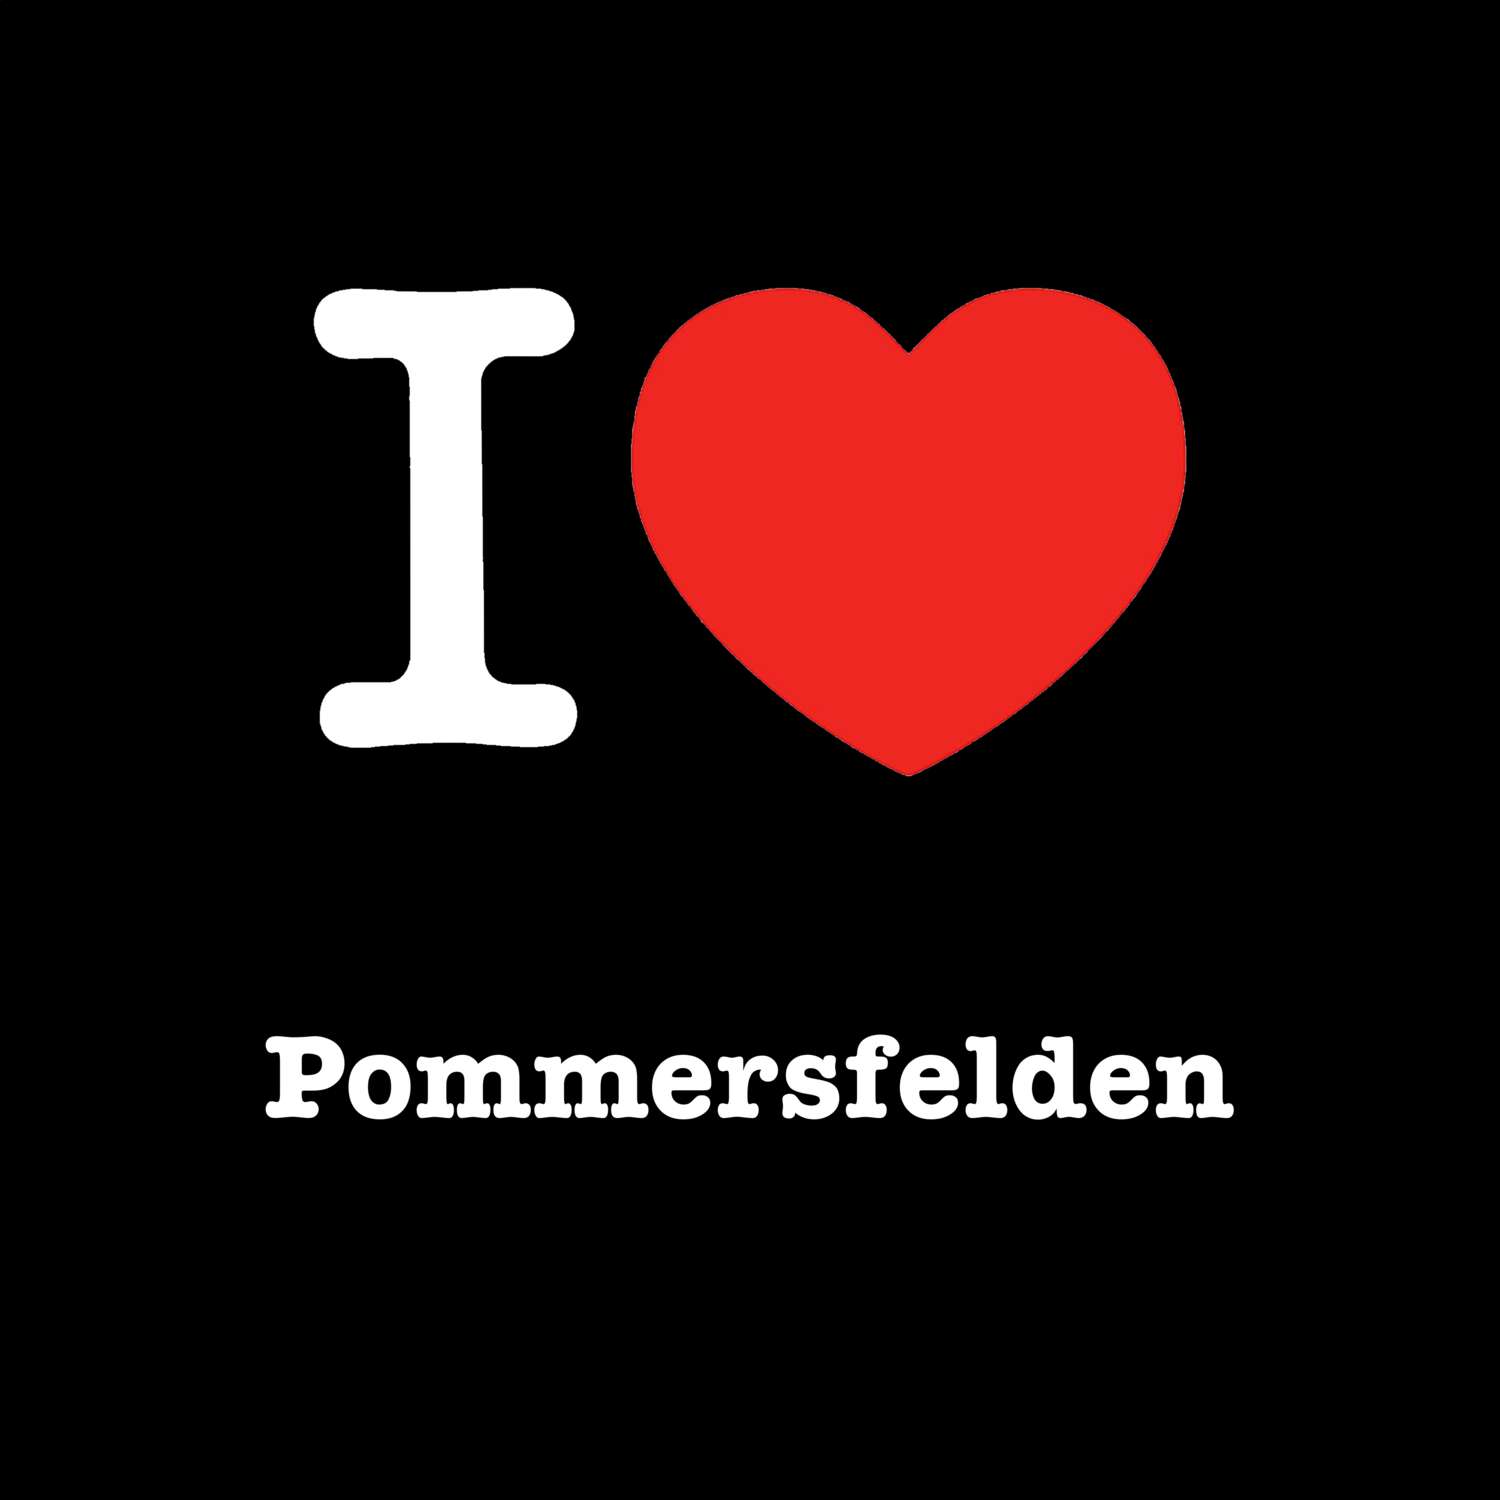 Pommersfelden T-Shirt »I love«